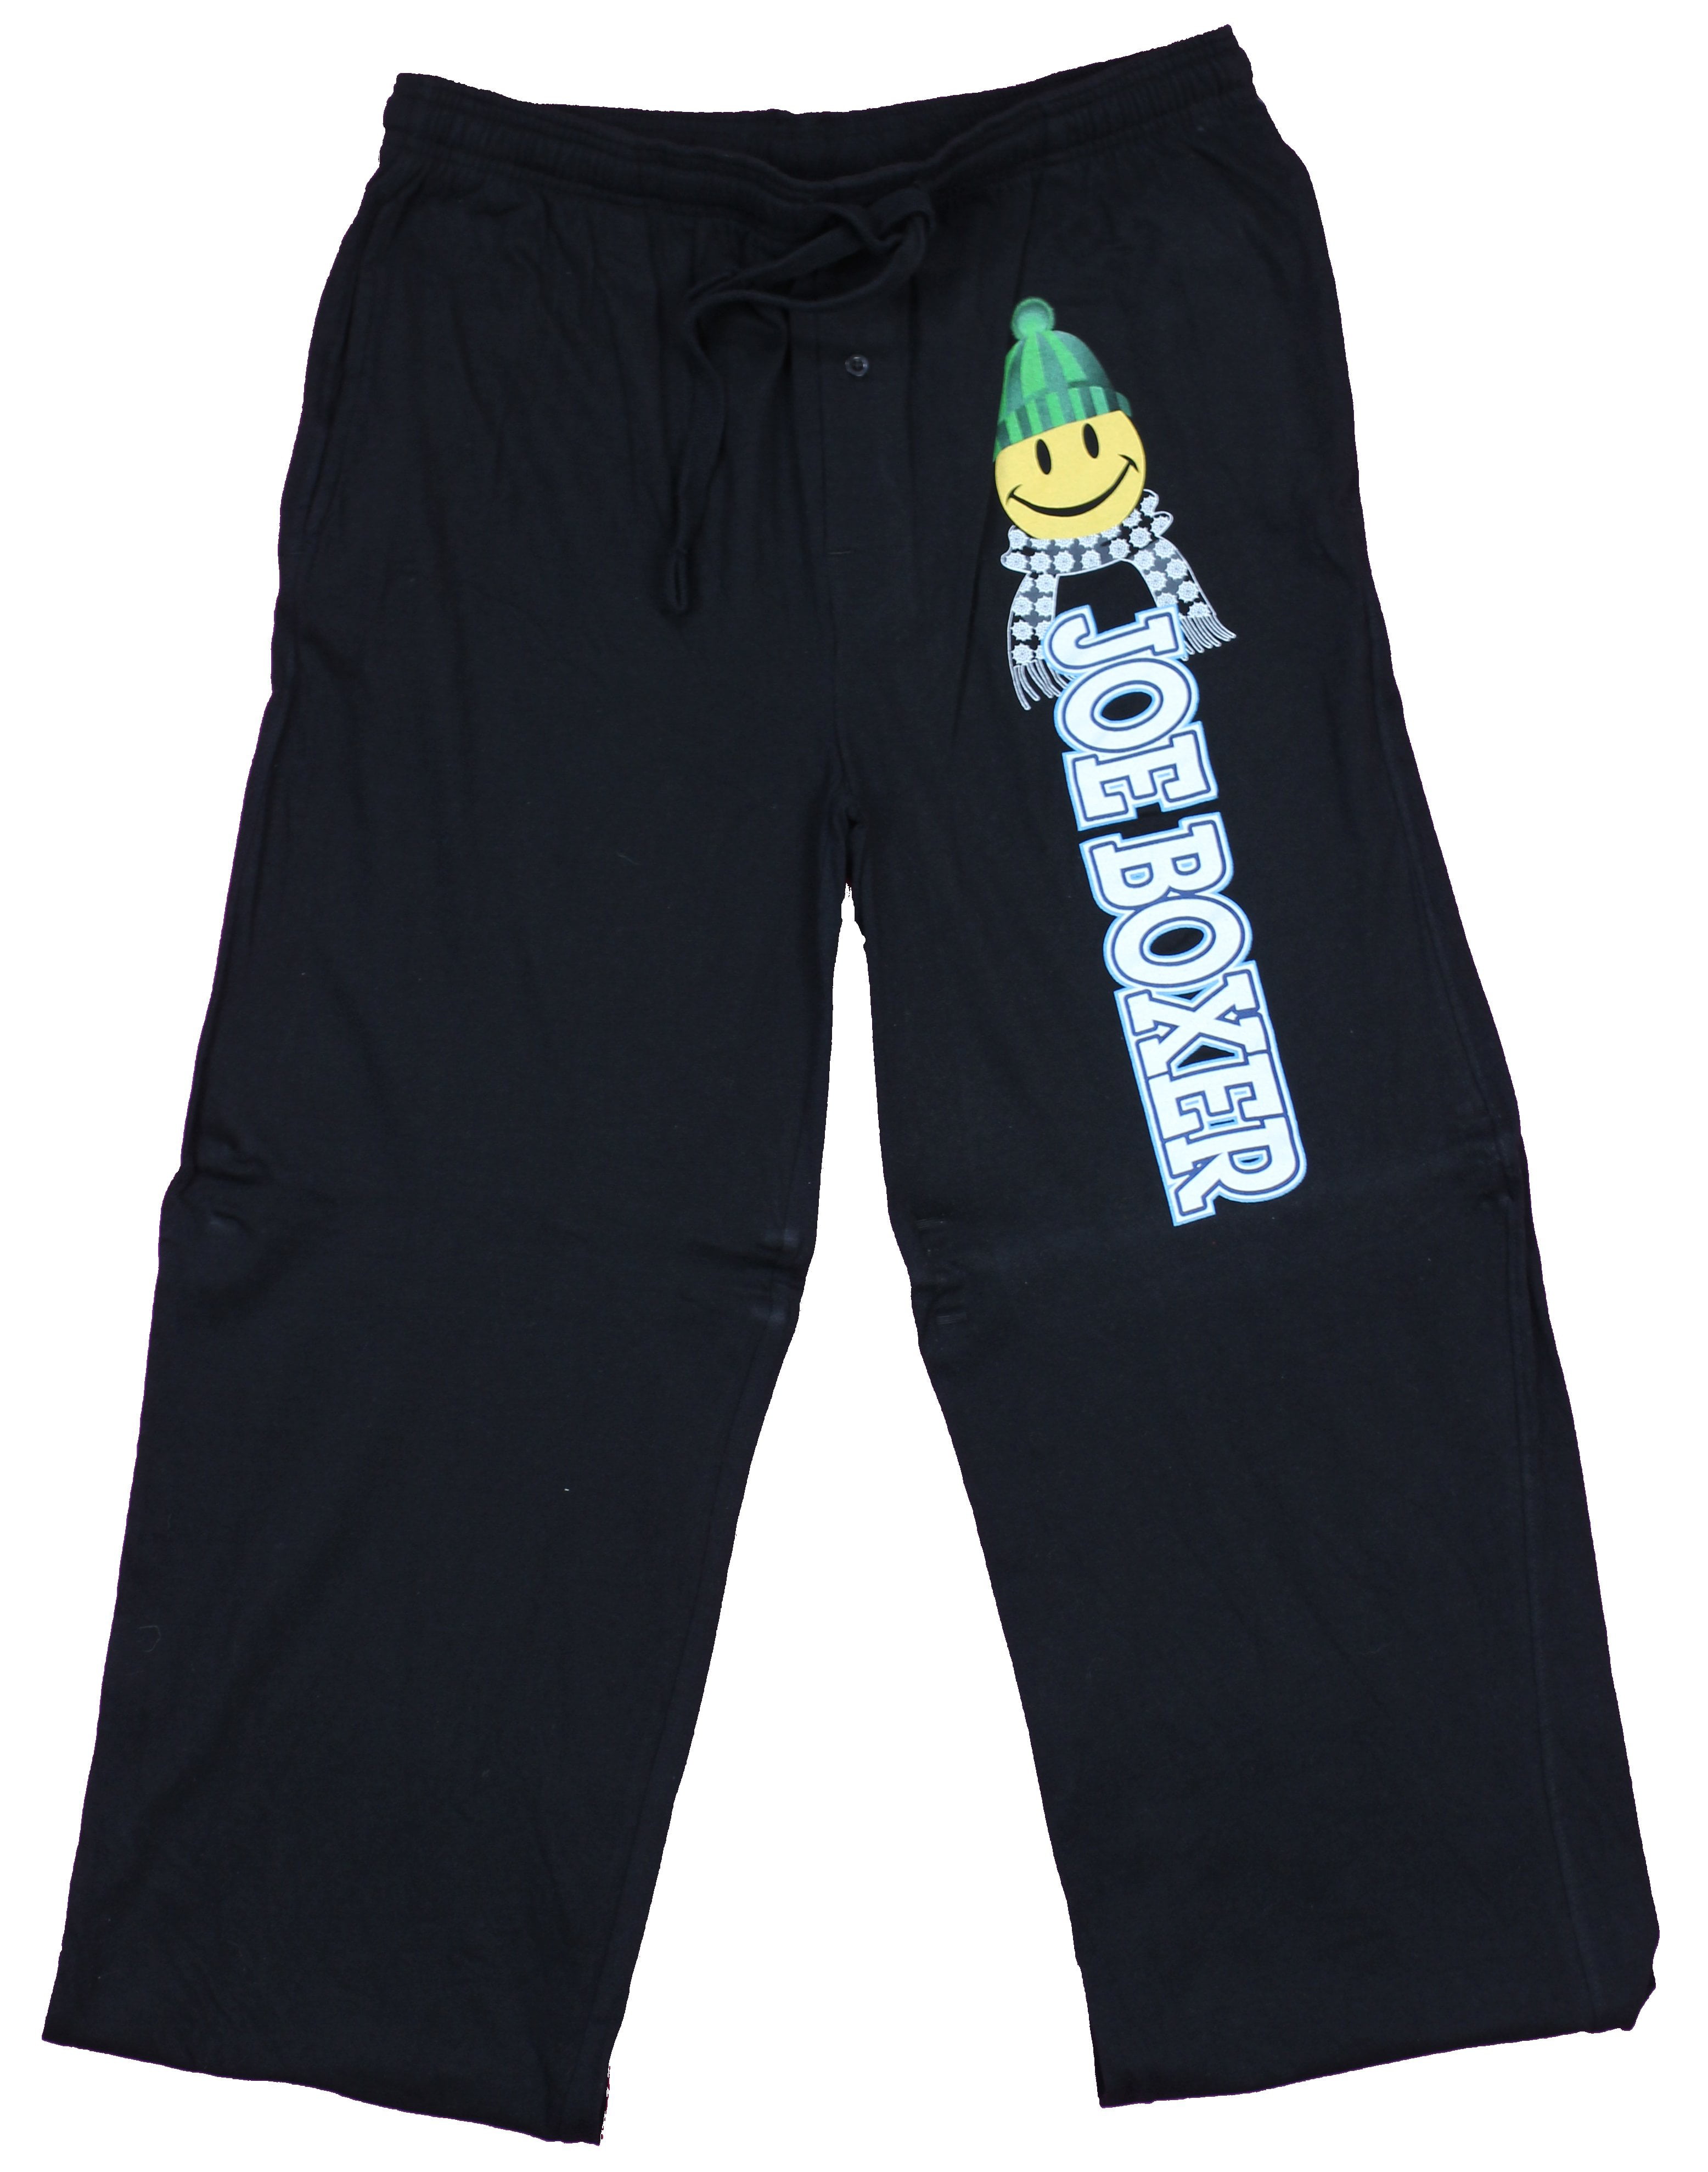 BRAND NEW 2XL Joe Boxer Men's Microfleece Pajama Pants XXL 